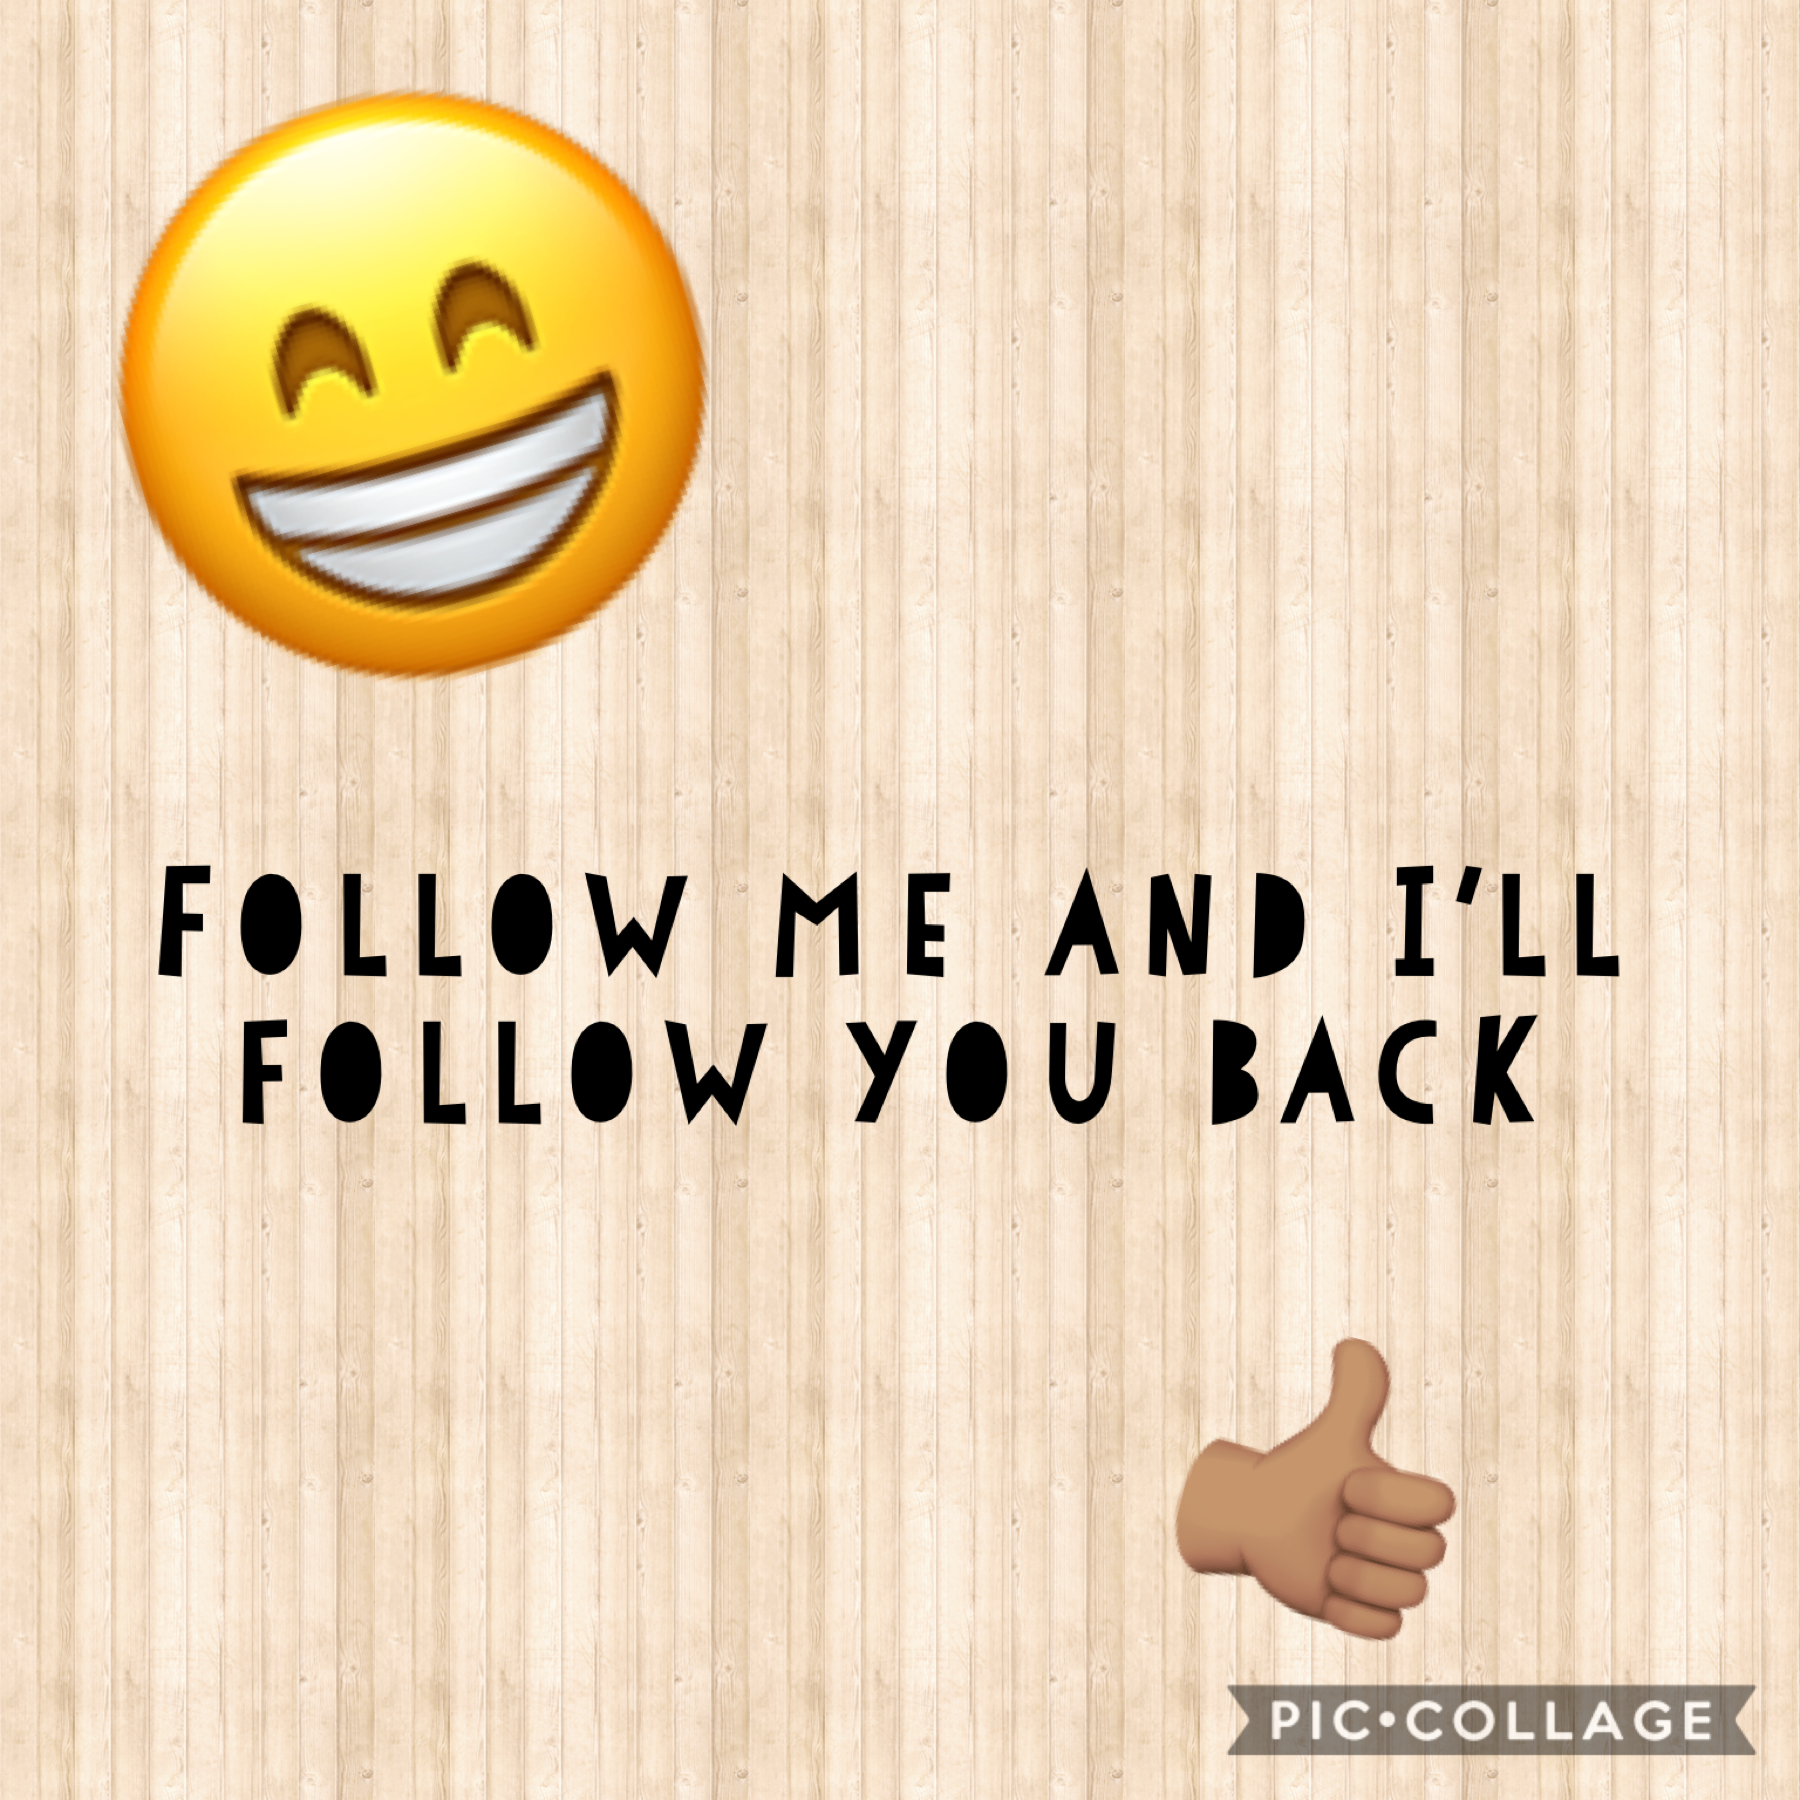 Pleassssse follow!!! I’ll follow back😁